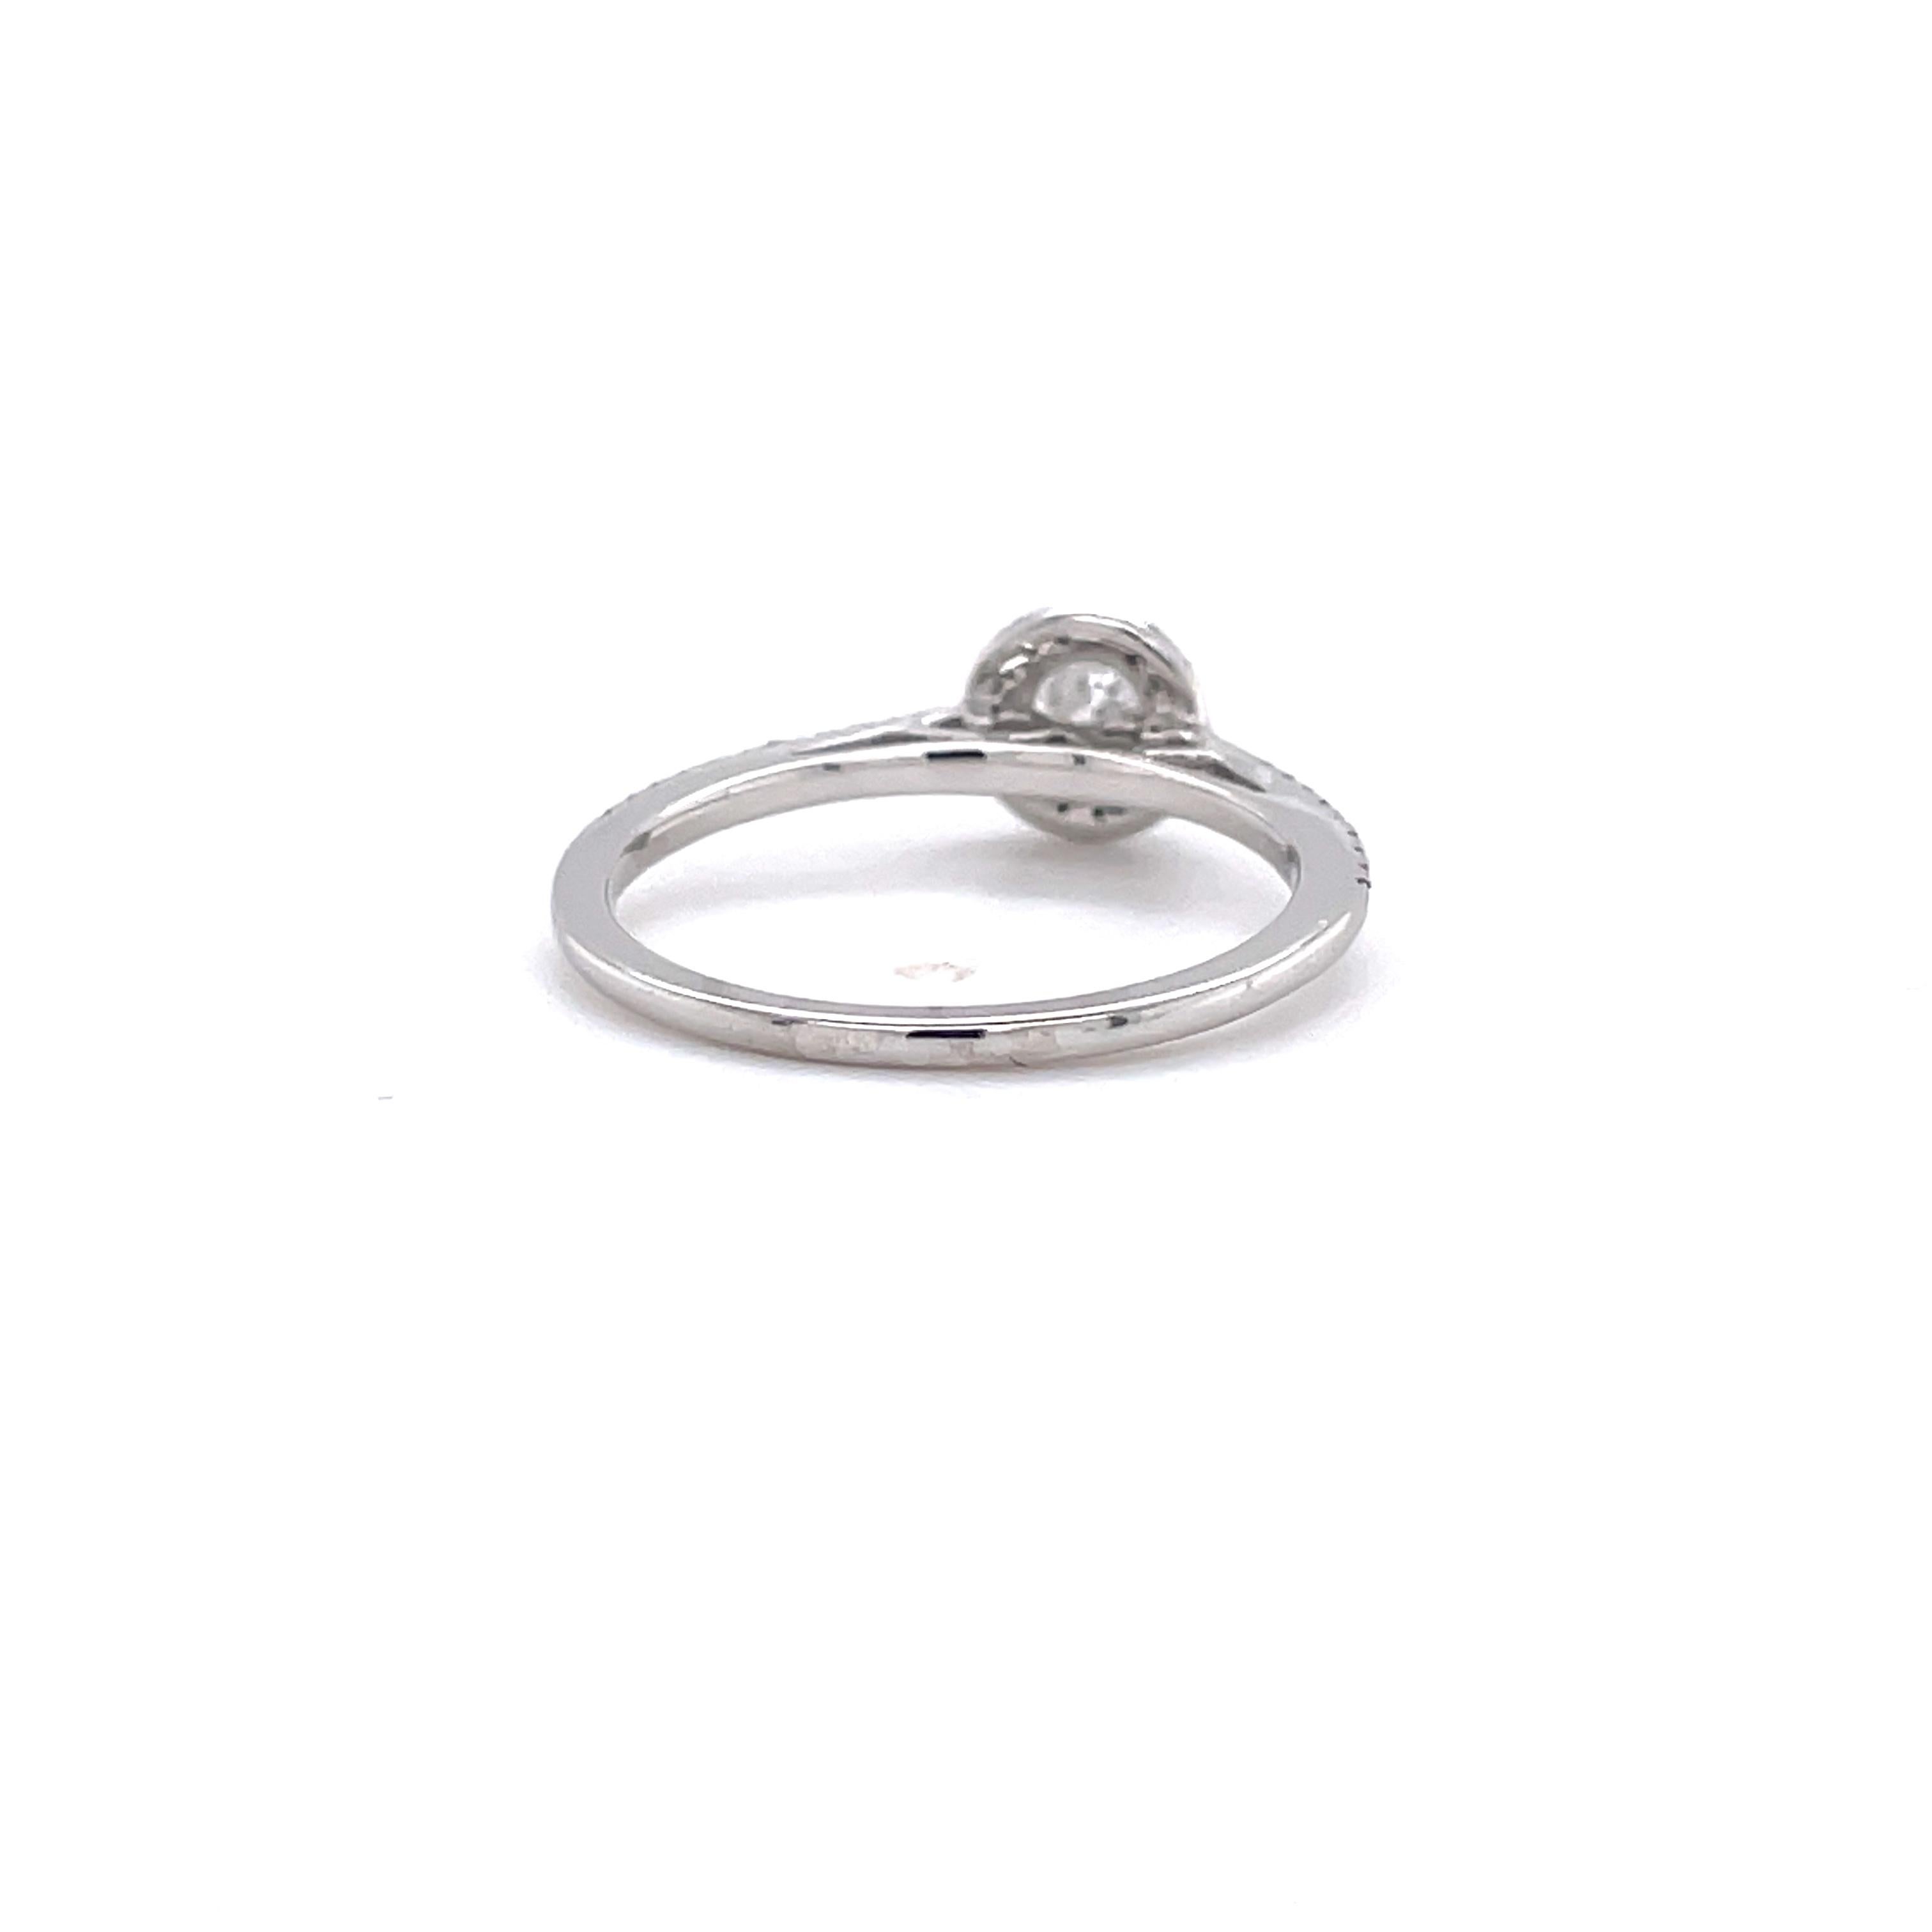 Dieser atemberaubende und elegante Diamantring hat einen wunderschönen runden Brillanten von 0,34 ct (Farbe F-G, Reinheit I1) in der Mitte und 40 weitere Diamanten von 0,21 cttw (Farbe H-I, Reinheit I1) an den Seiten. Der Ring ist aus luxuriösem